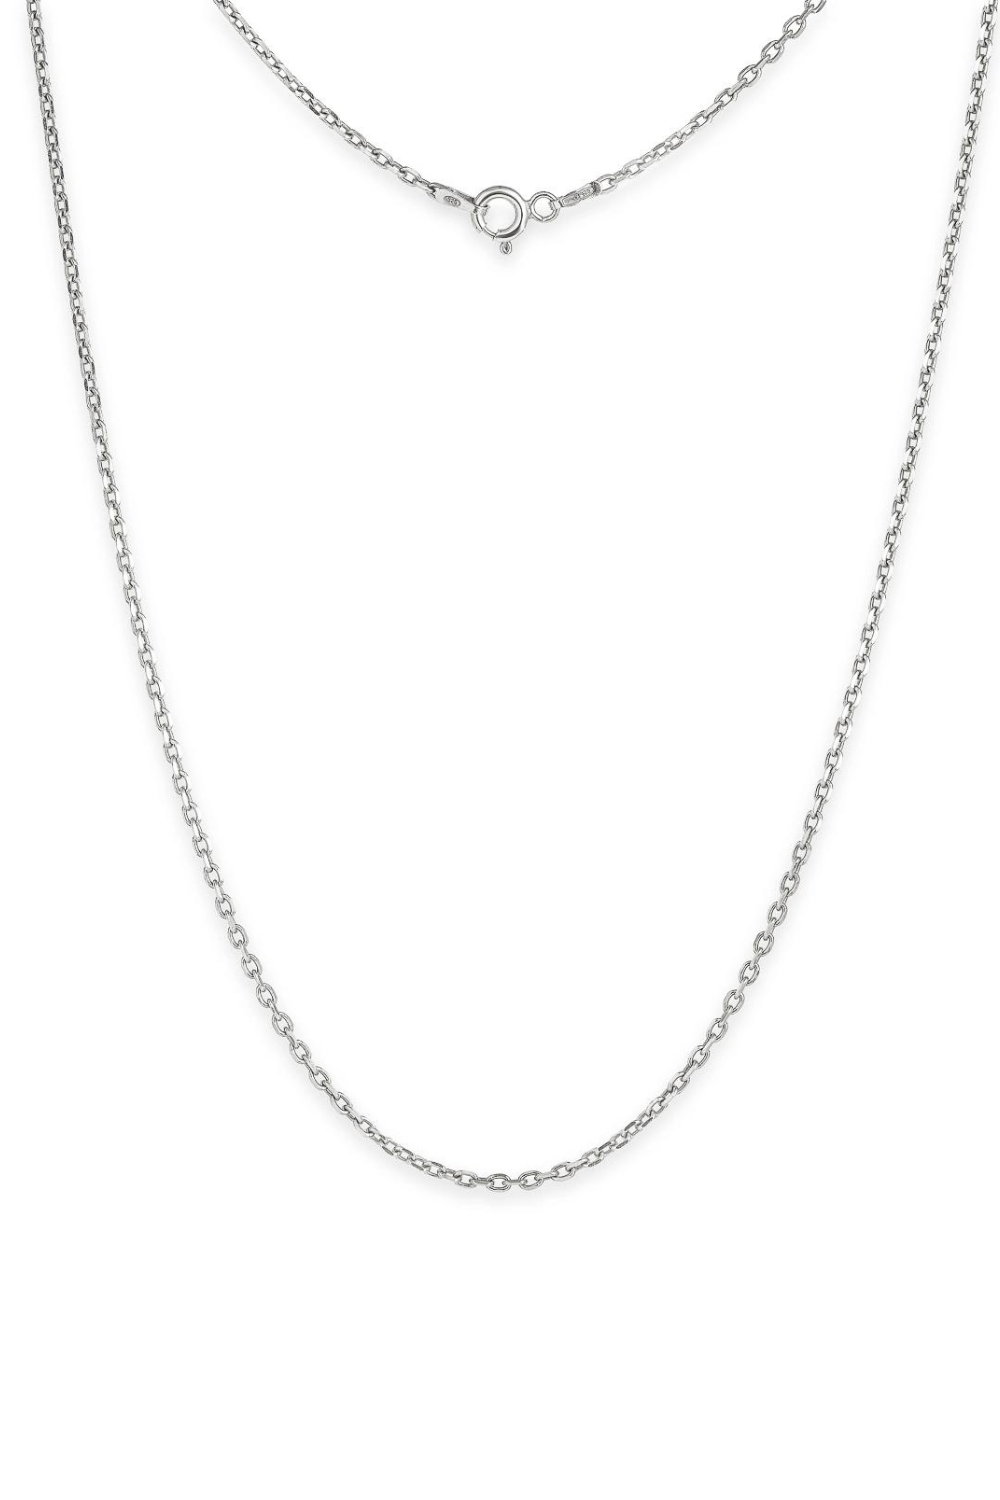 Baroque pearl+Silver braided chain Anker 55 cm (SILVERAMO), Per01